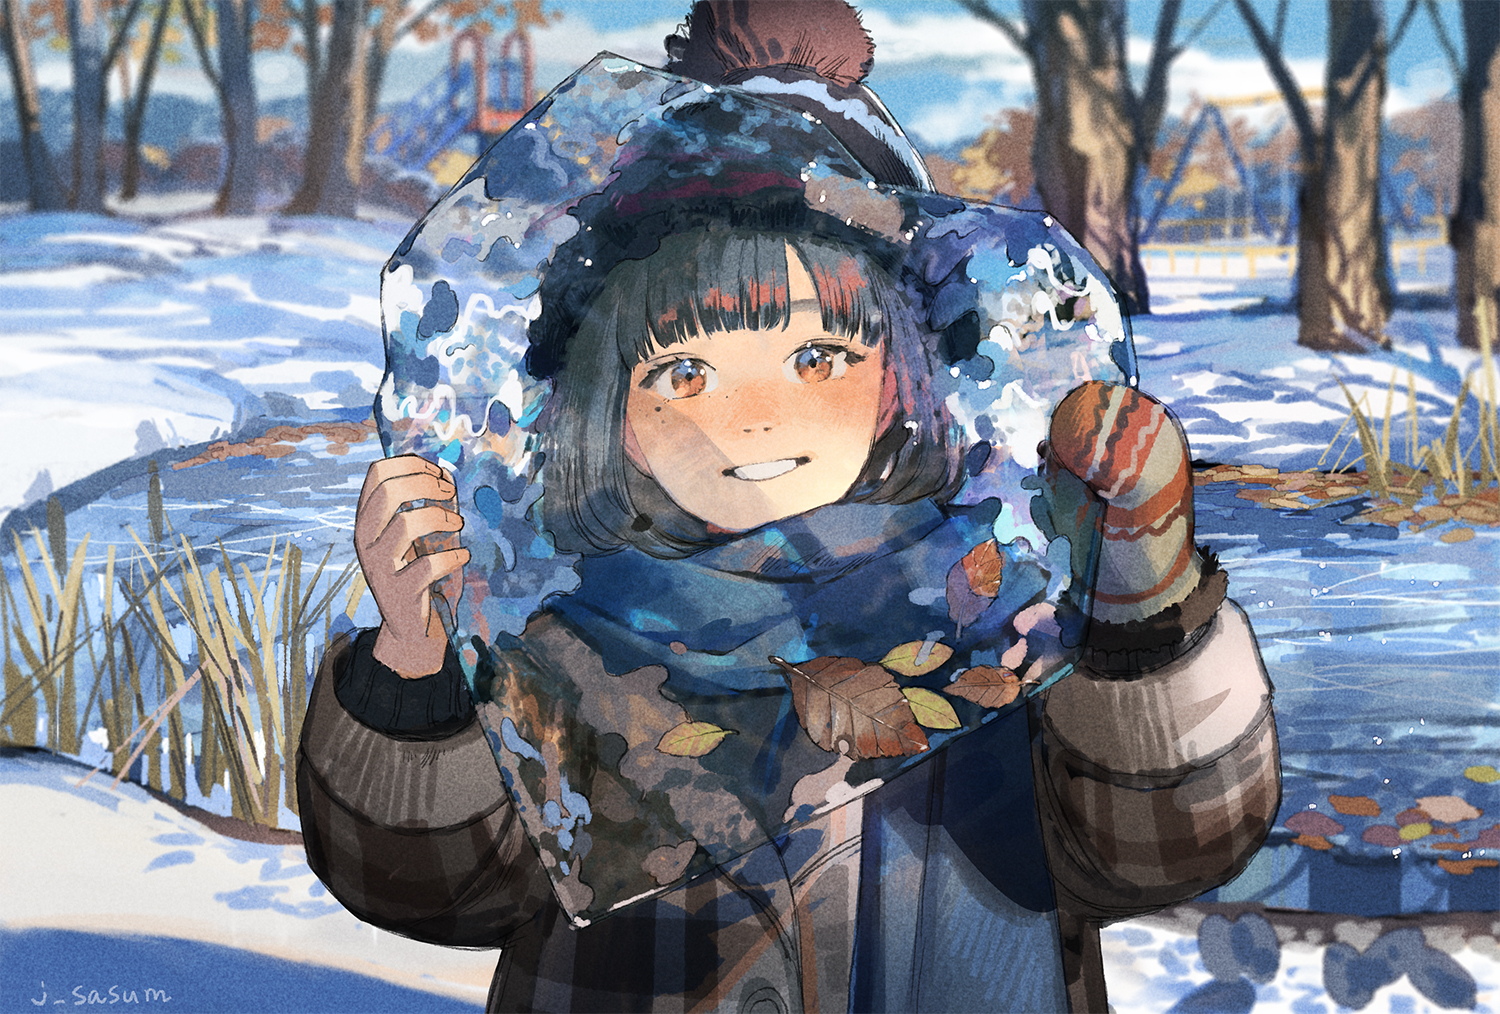 Wallpaper, anime girls, winter, snow, trees, leaves, ice, dark hair, long hair, mittens, smiling, orange eyes, scarf, swing, lake 1500x1014